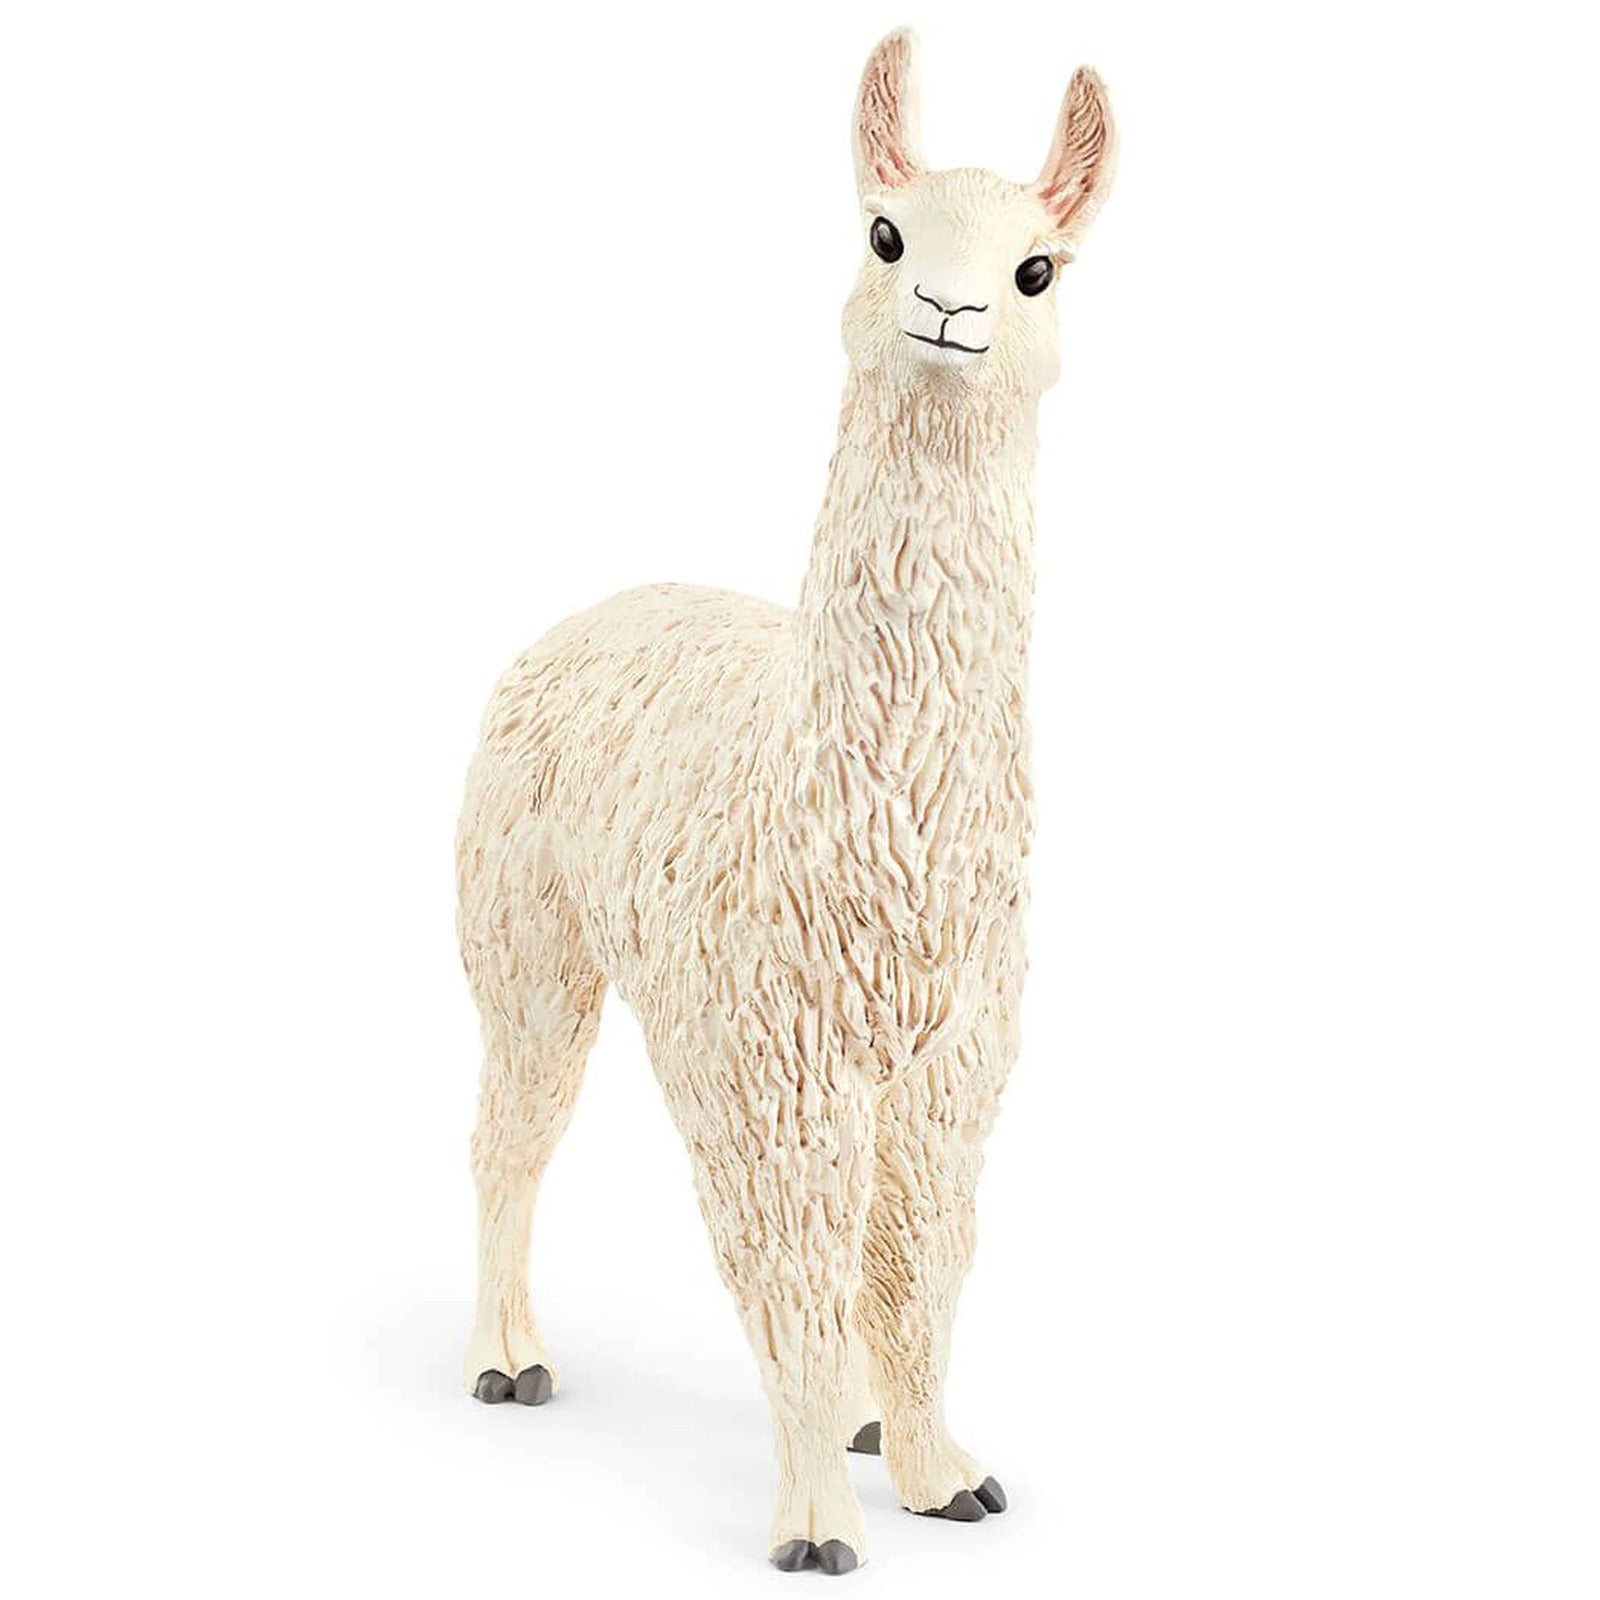 Schleich 13920 Llama toy